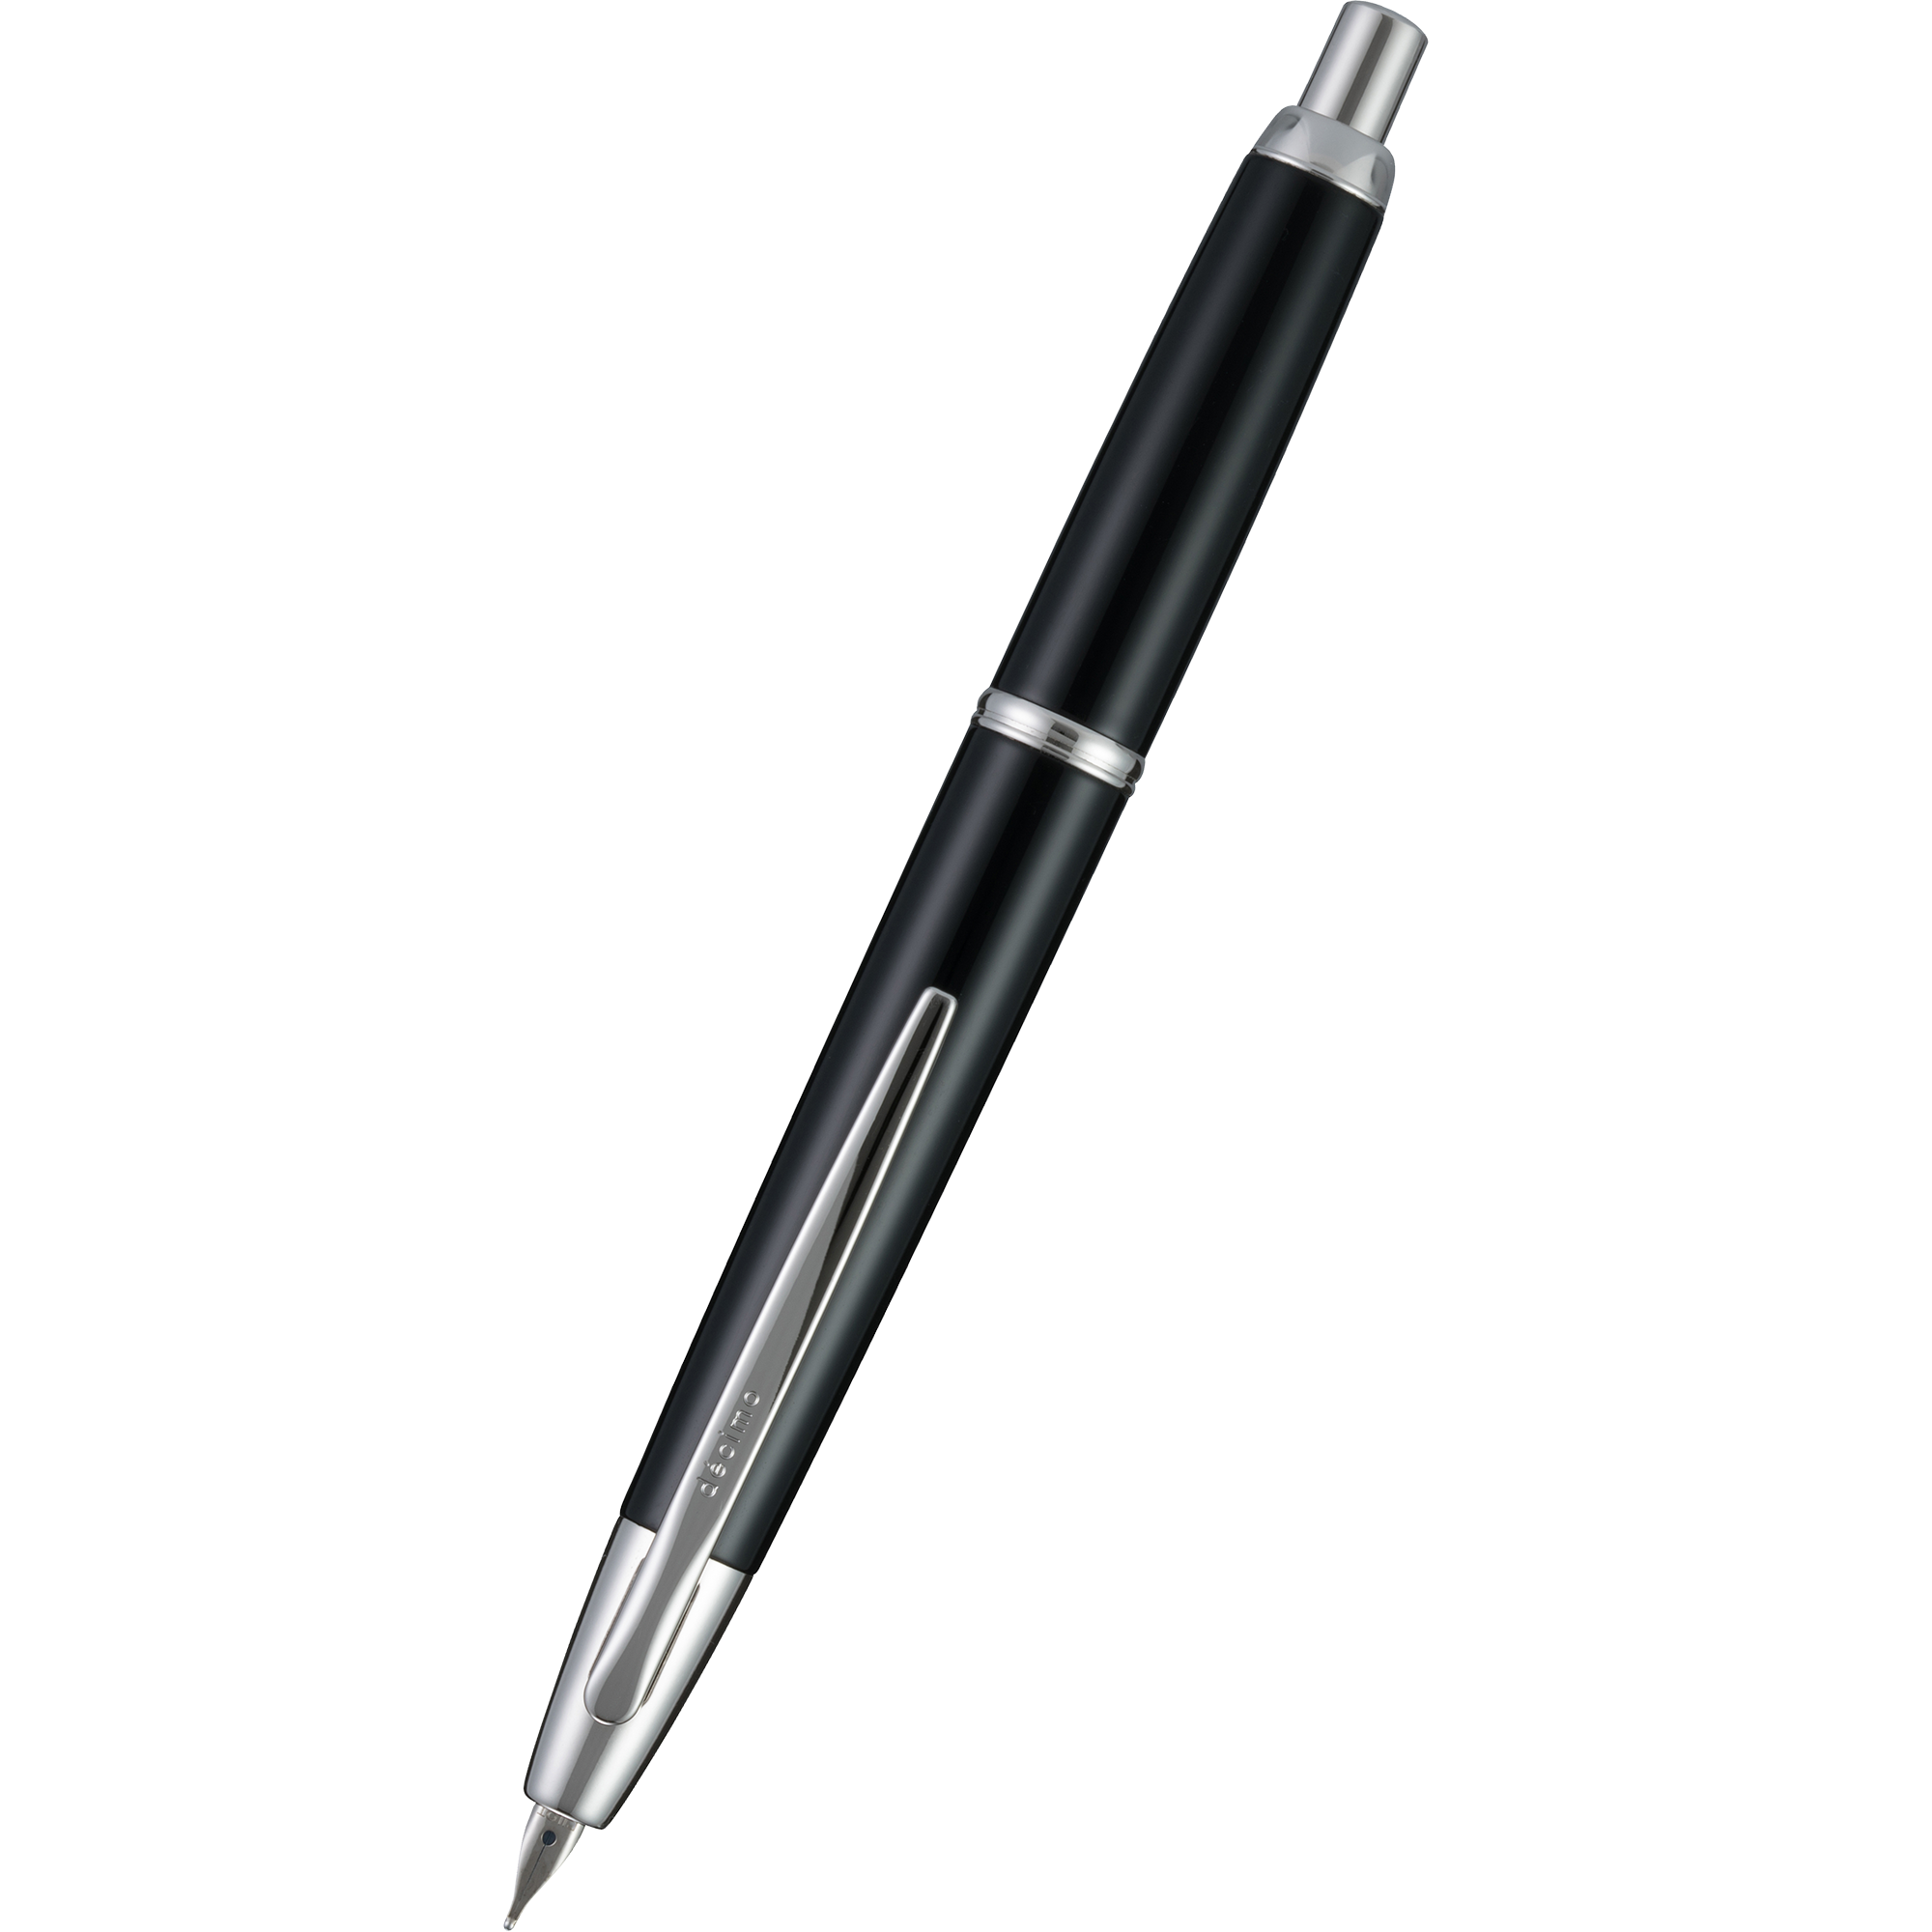 Pilot Vanishing Point Fountain Pen - Decimo Black-Pen Boutique Ltd